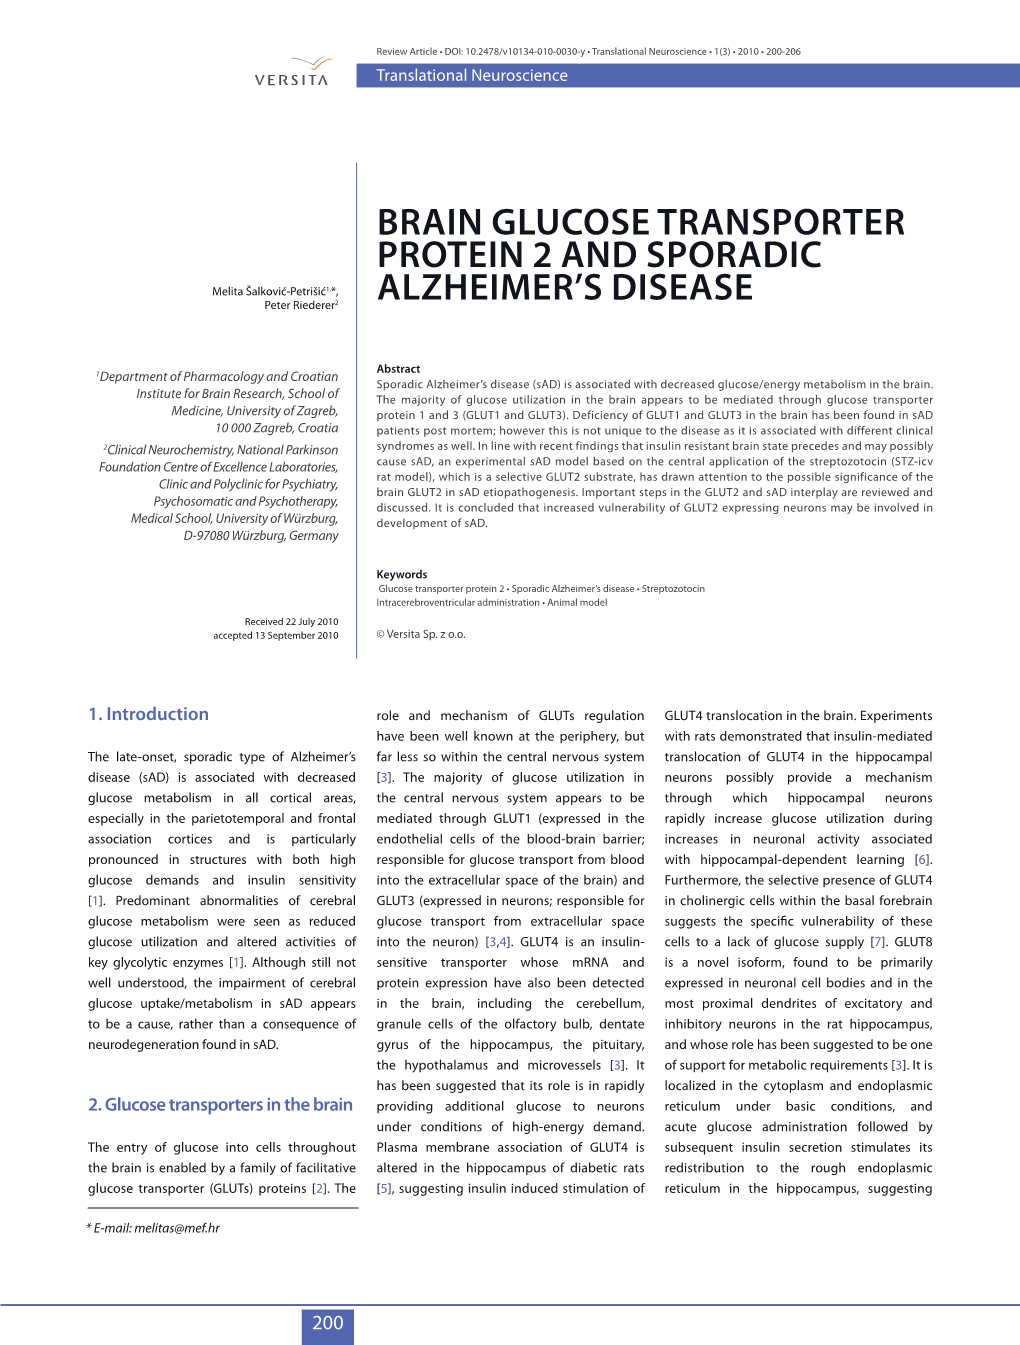 Brain Glucose Transporter Protein 2 and Sporadic Alzheimer's Disease